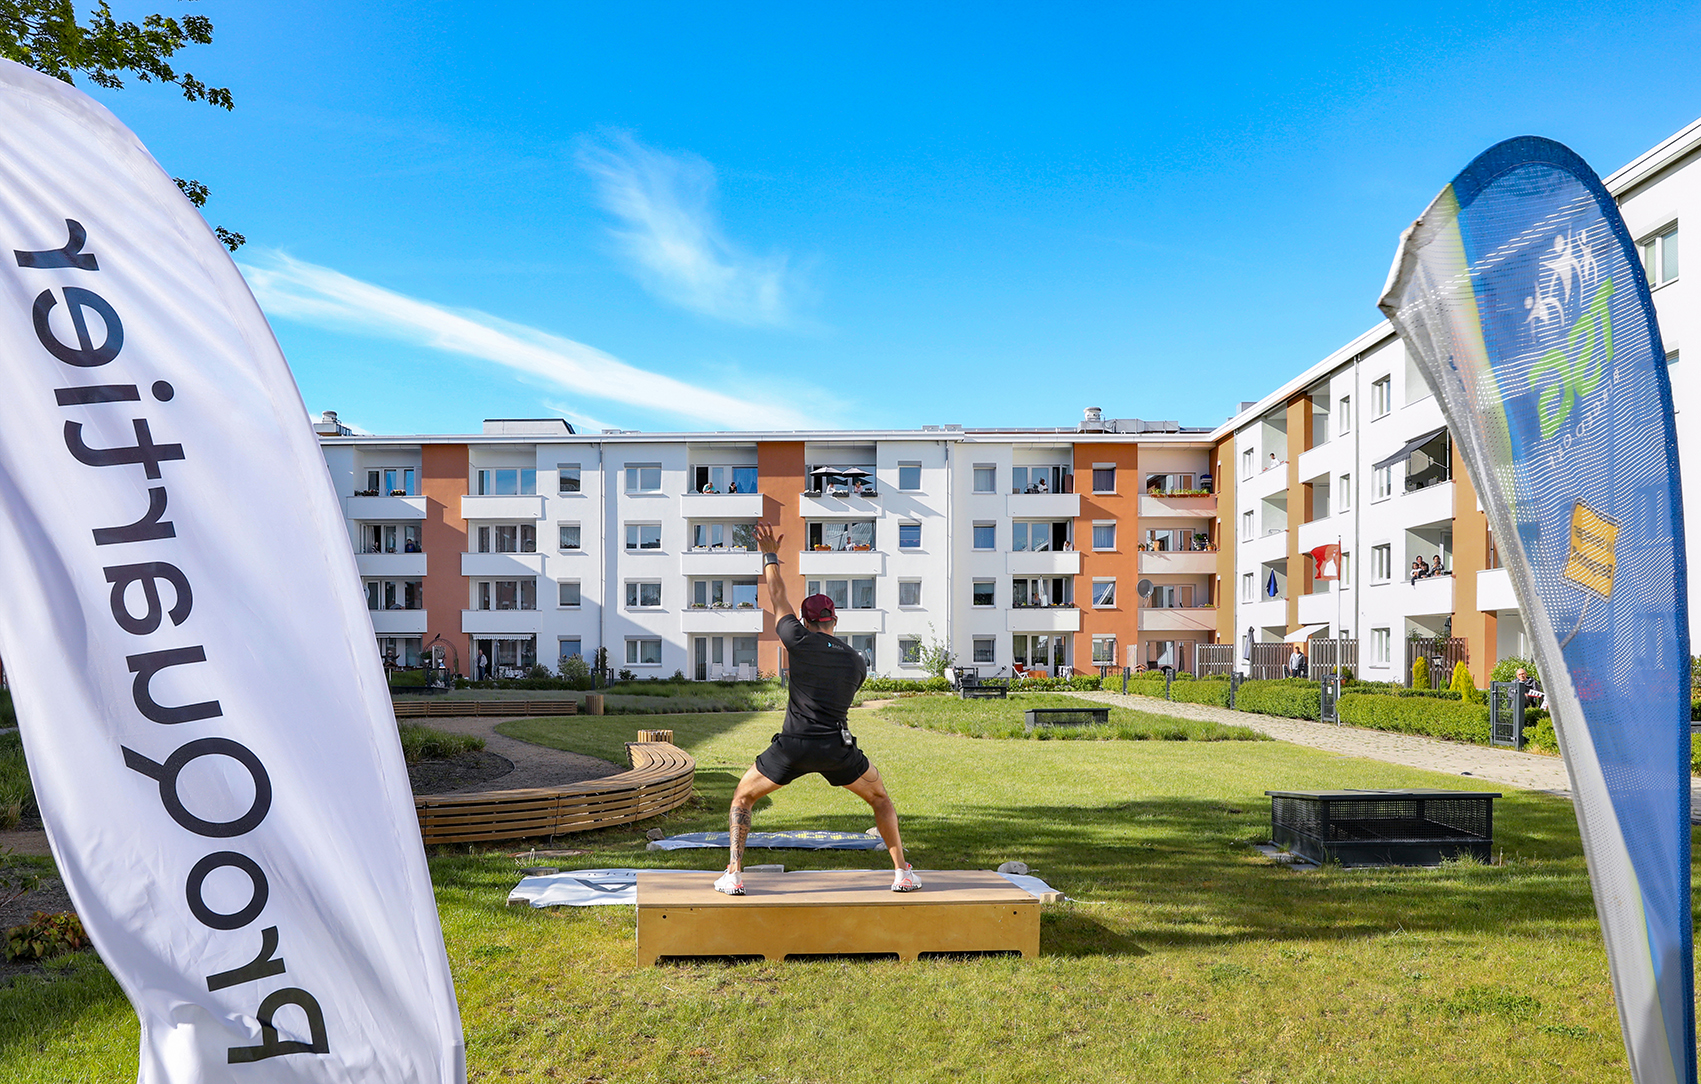 Ein Sporttrainer steht in Squathaltung auf einem Holzpodest und zeigt Sportübungen, im Hintergrund sind Wohngebäude